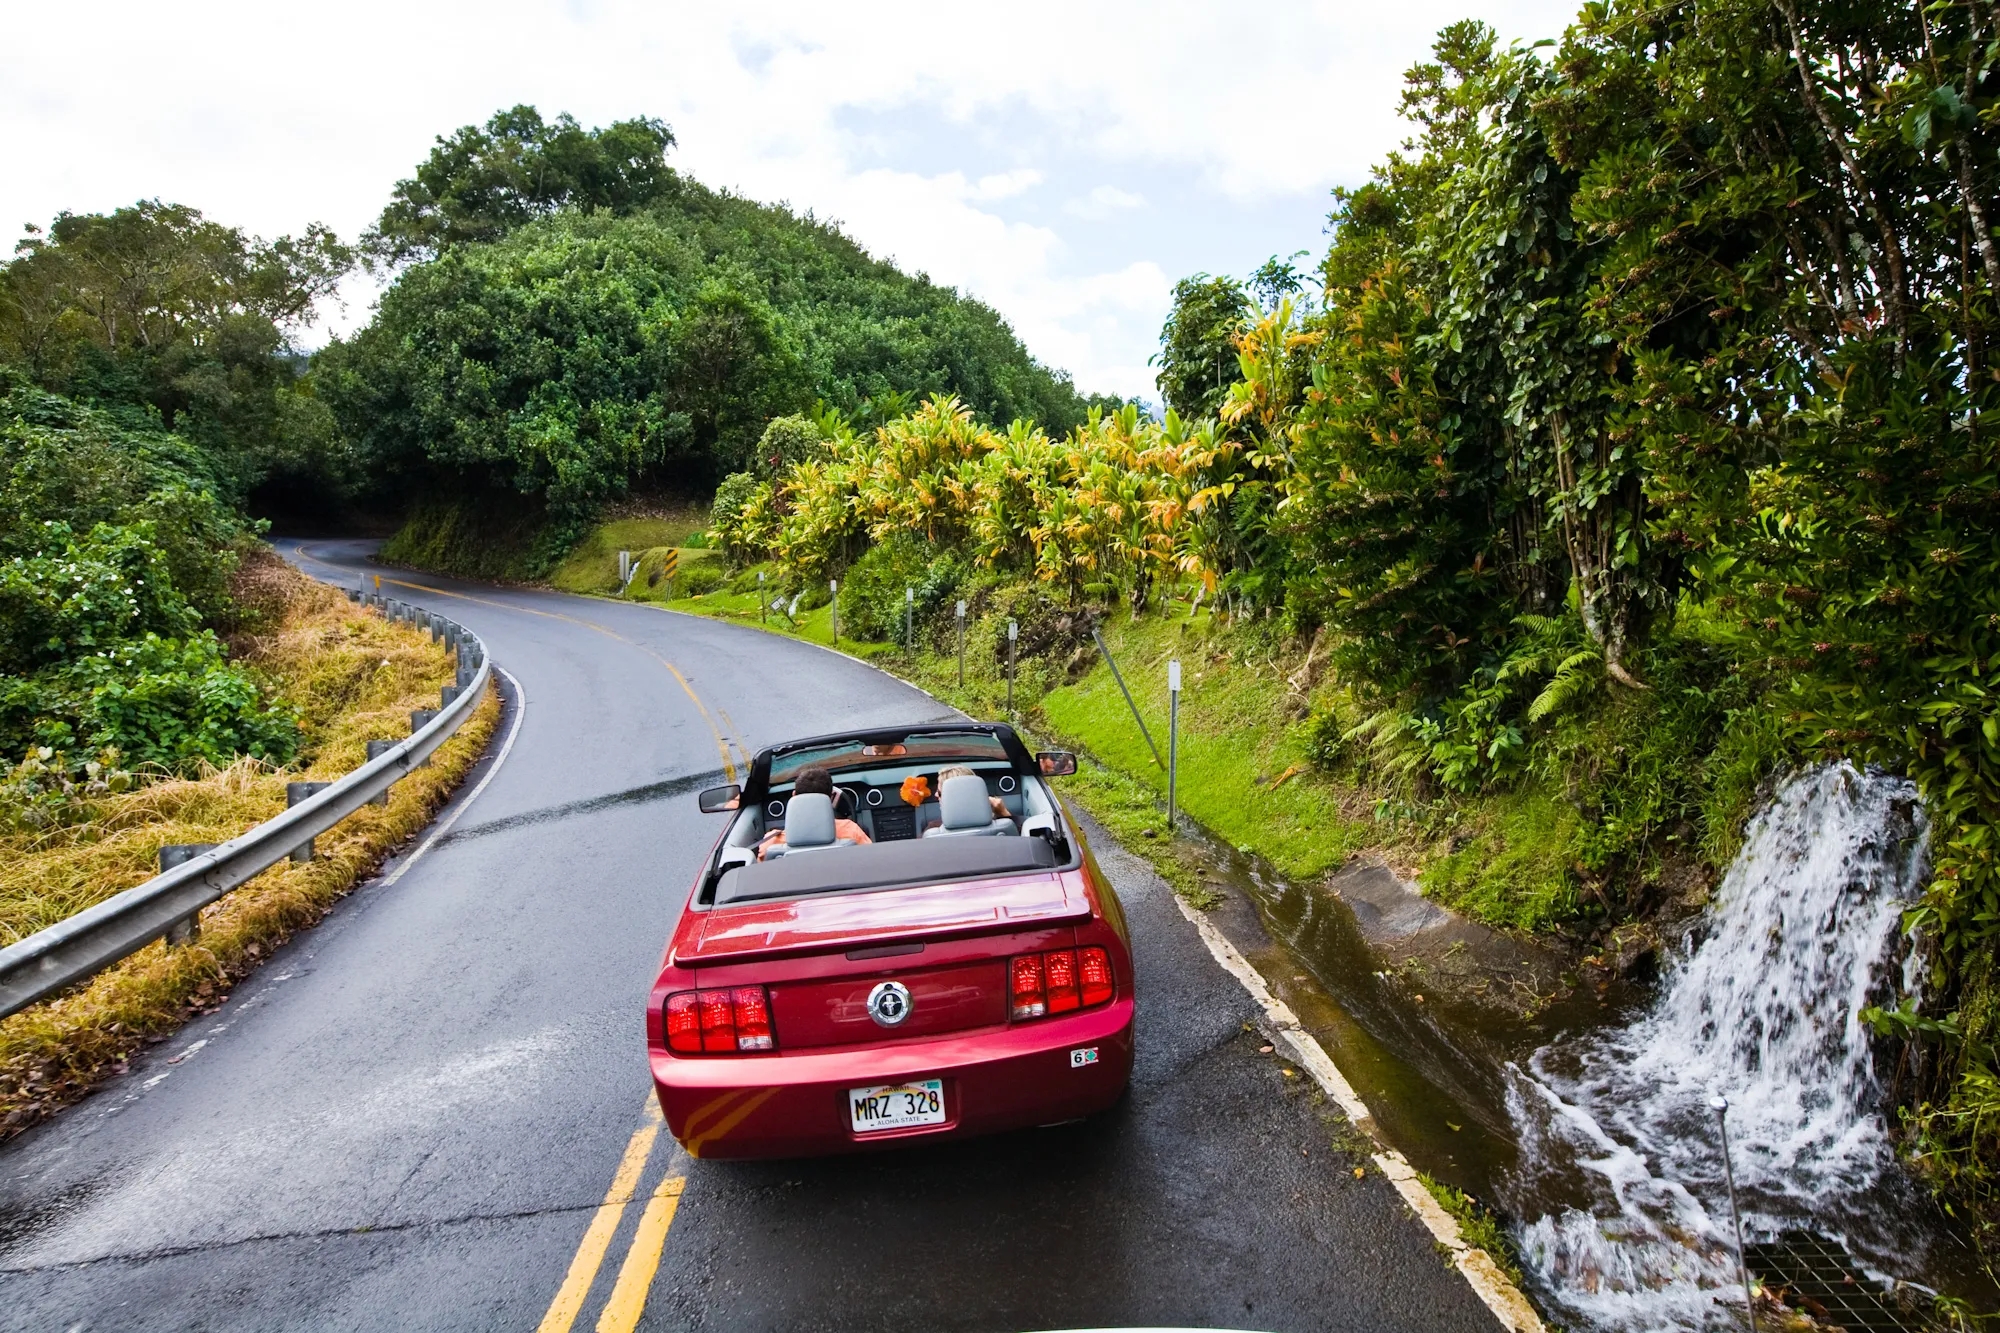 哈纳公路(Hana Highway)是位于夏威夷马UI地区的一条蜿蜒曲折的风景公路，被誉为全球最美丽